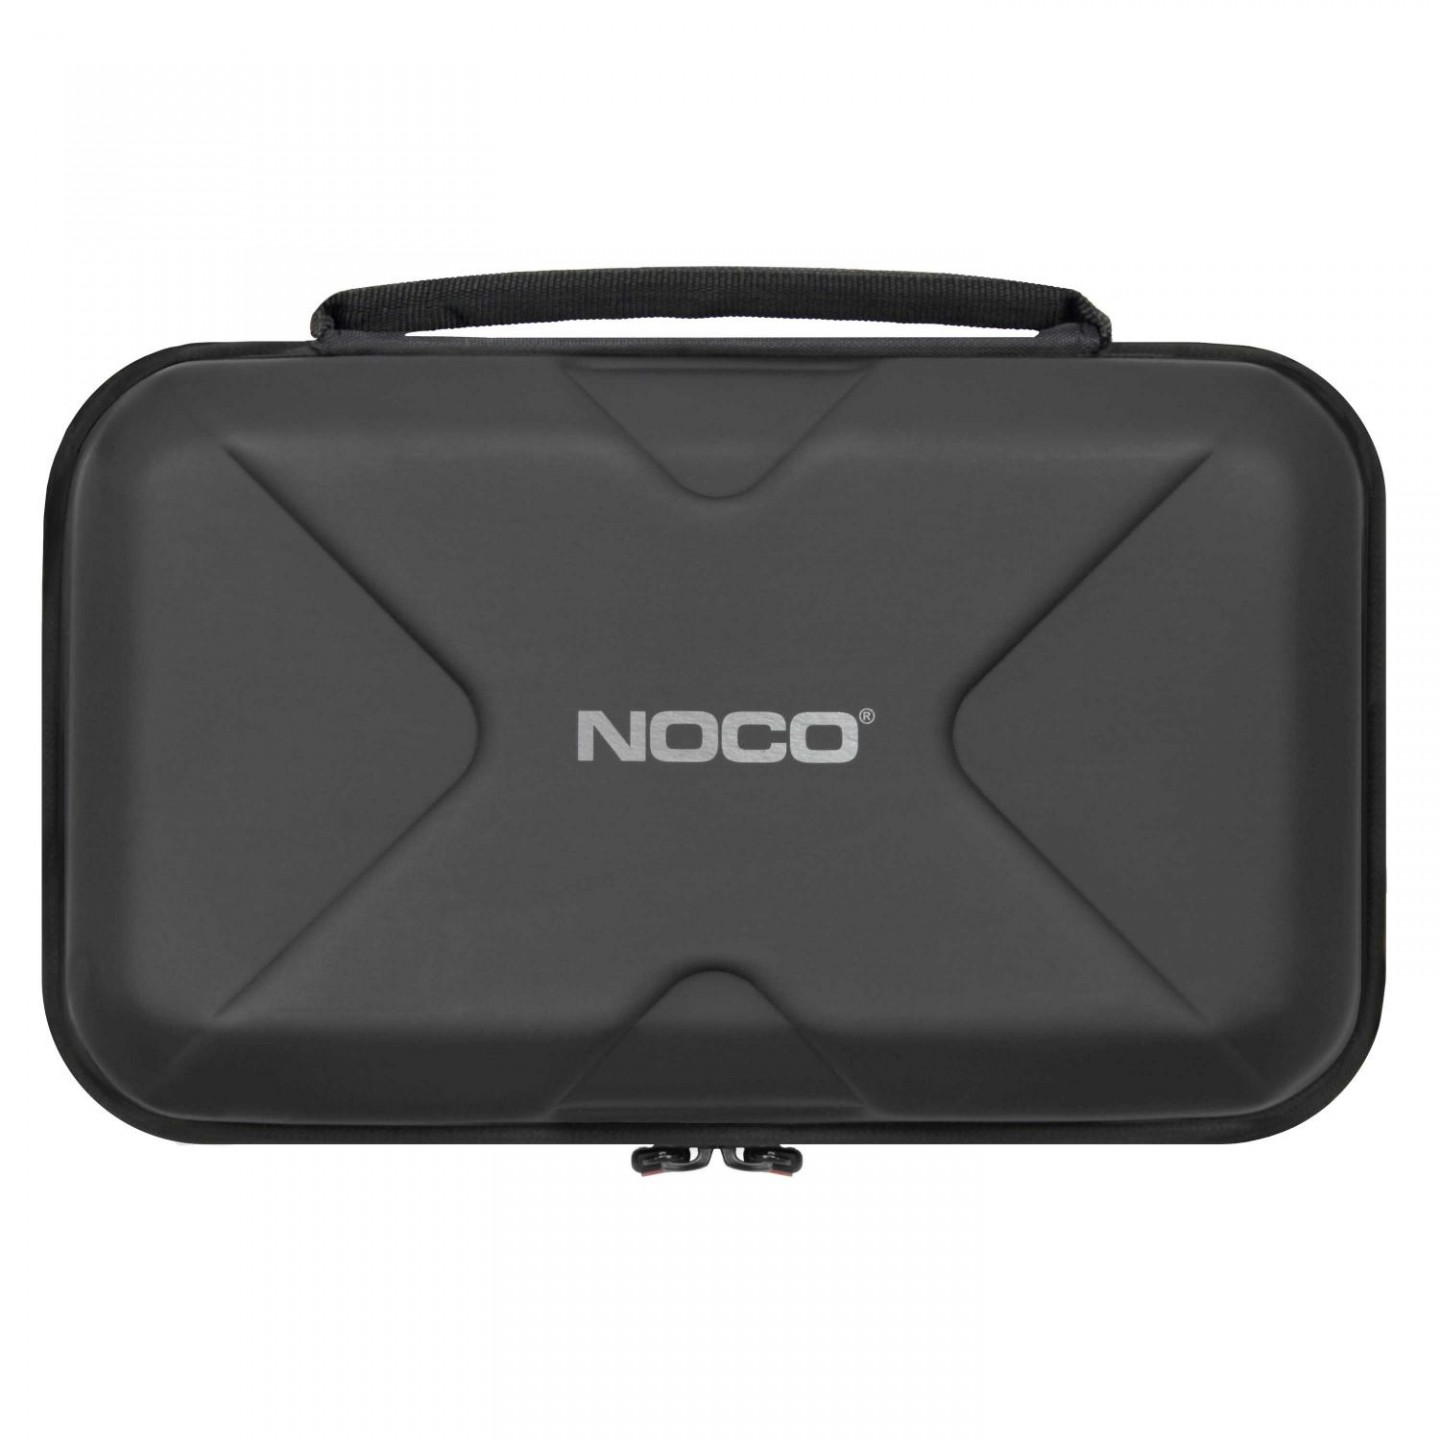 NOCO - Boost Sport & Boost Plus Protective Case - GBC014